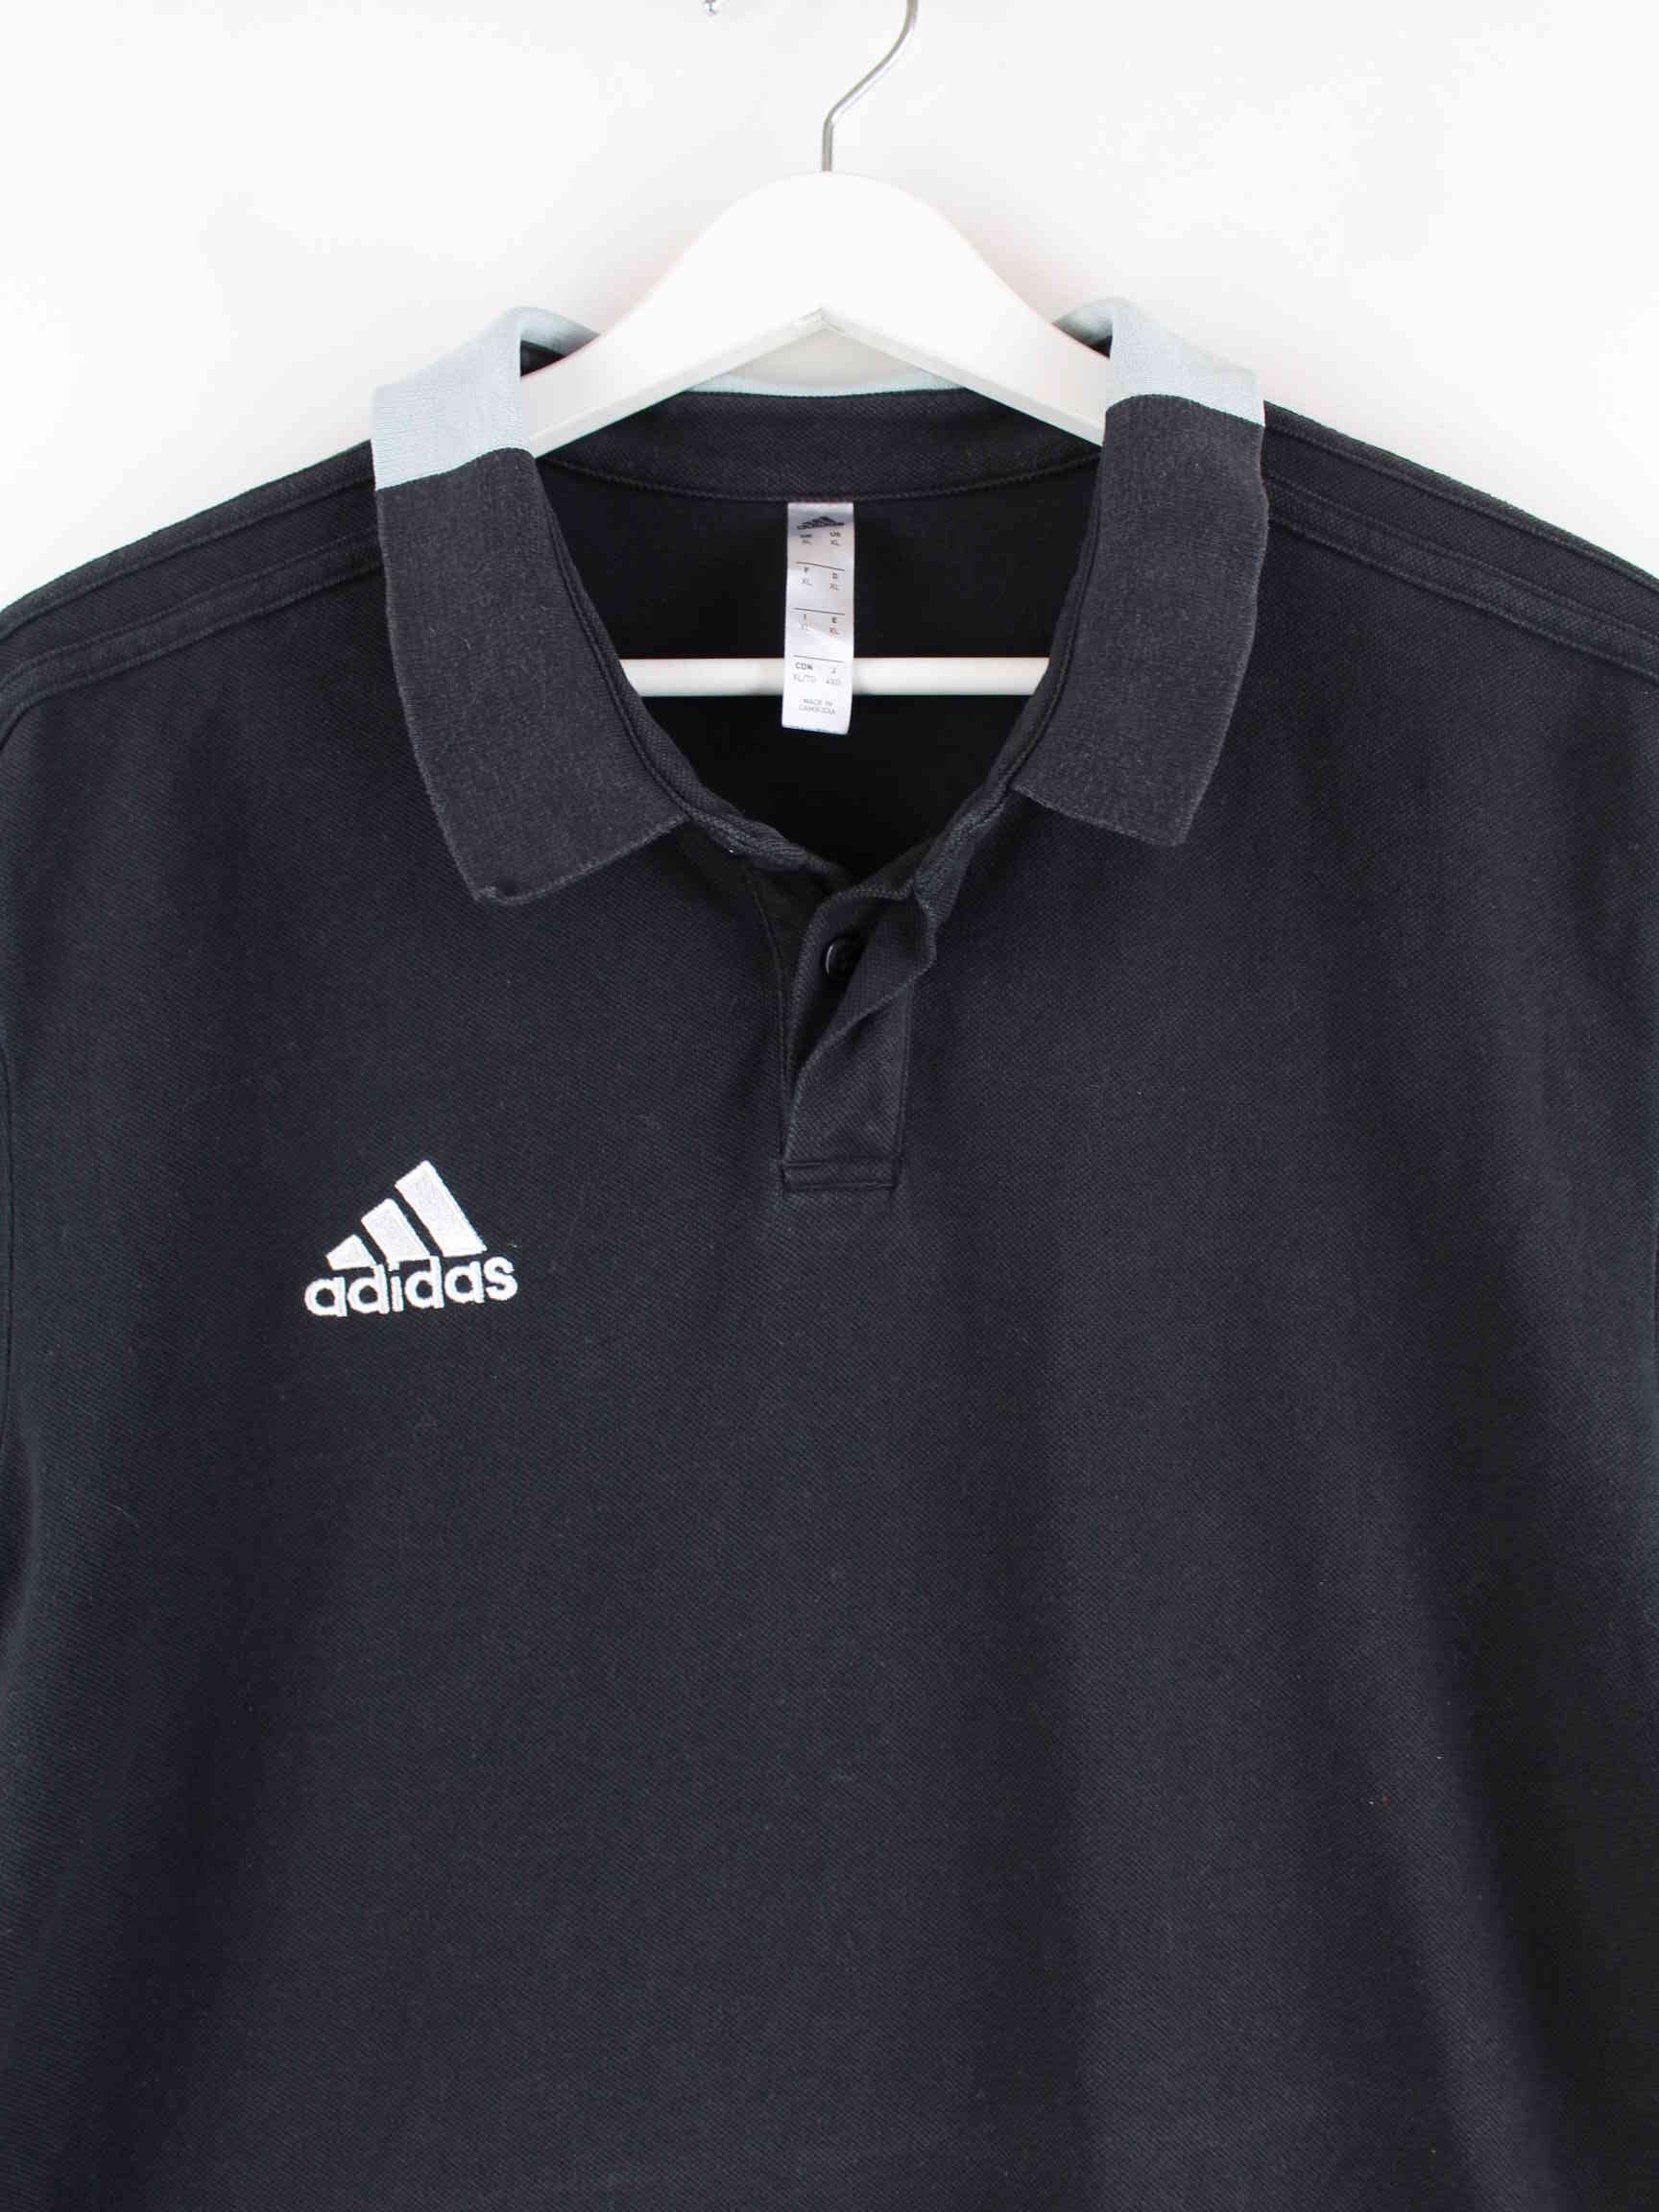 Adidas Polo Schwarz XL (detail image 1)